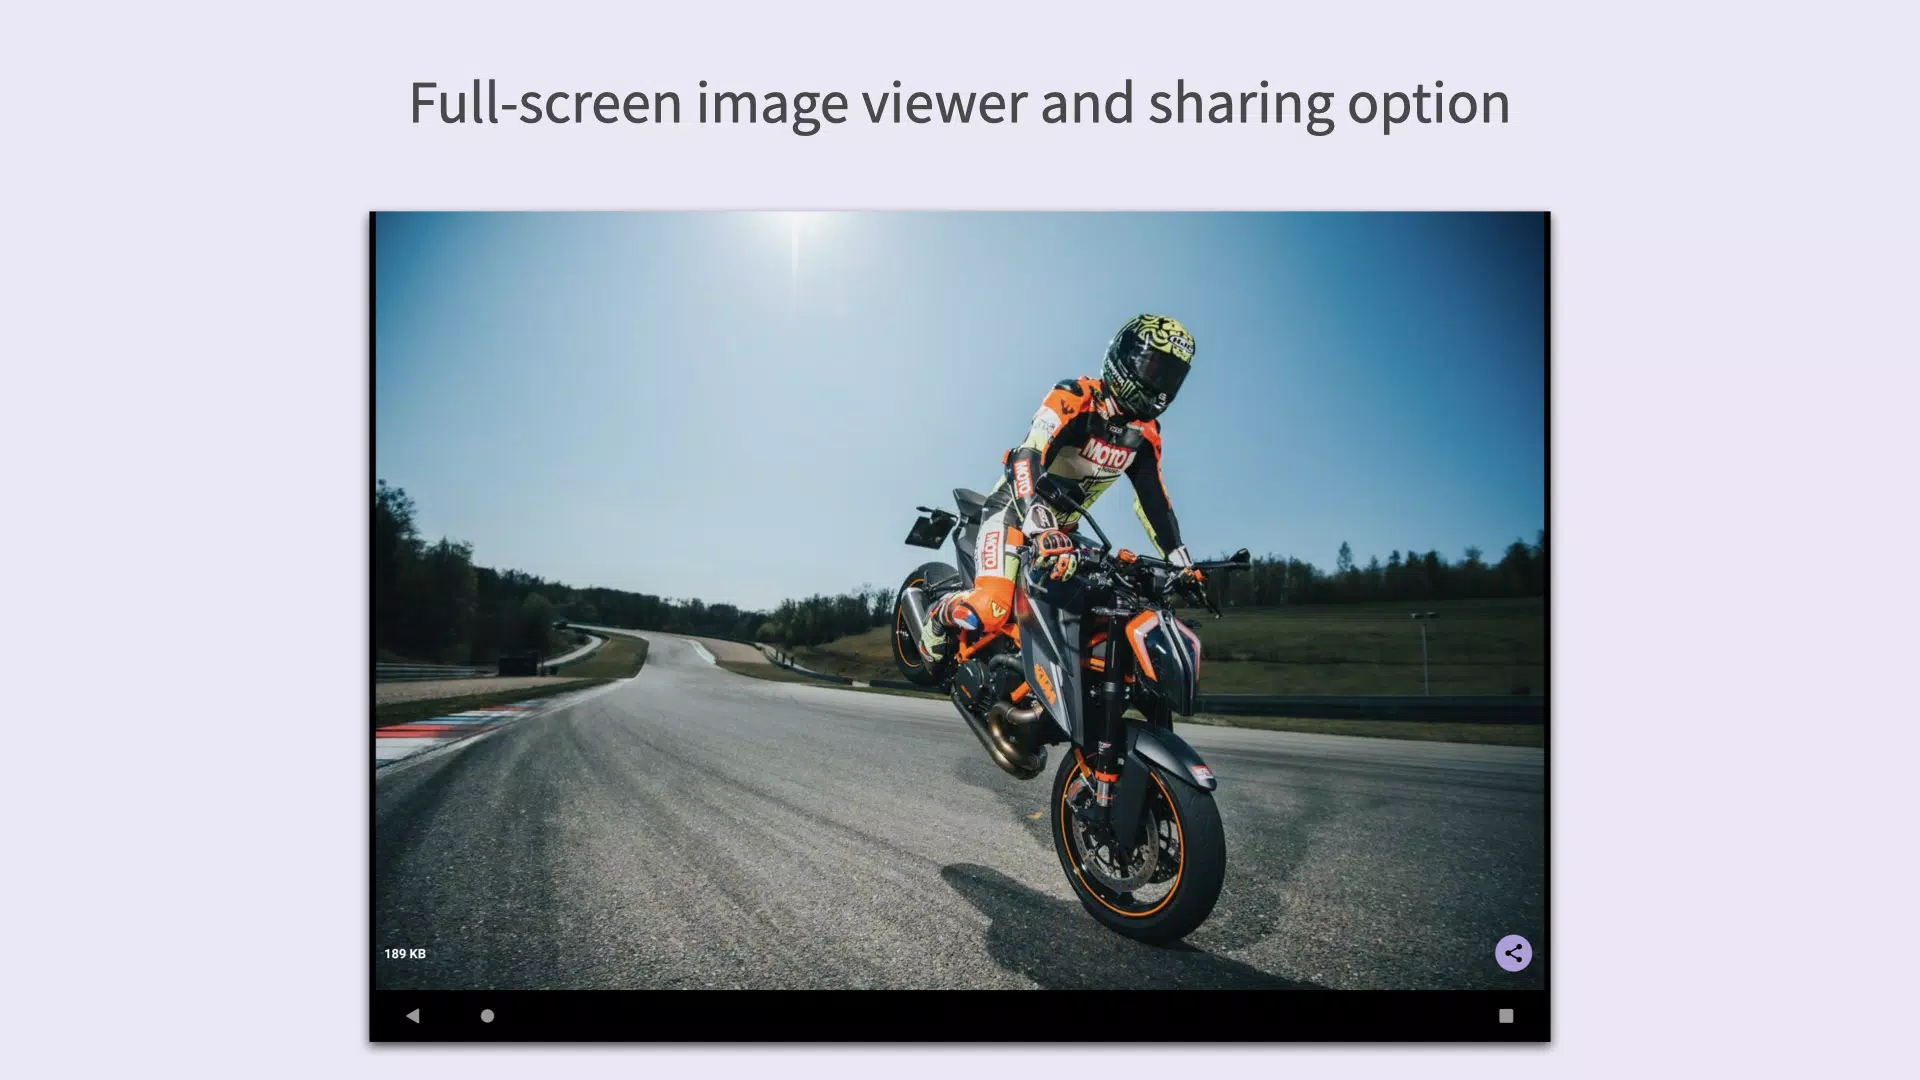 Compresor de imagen - JPEG/PNG for Android - APK Download